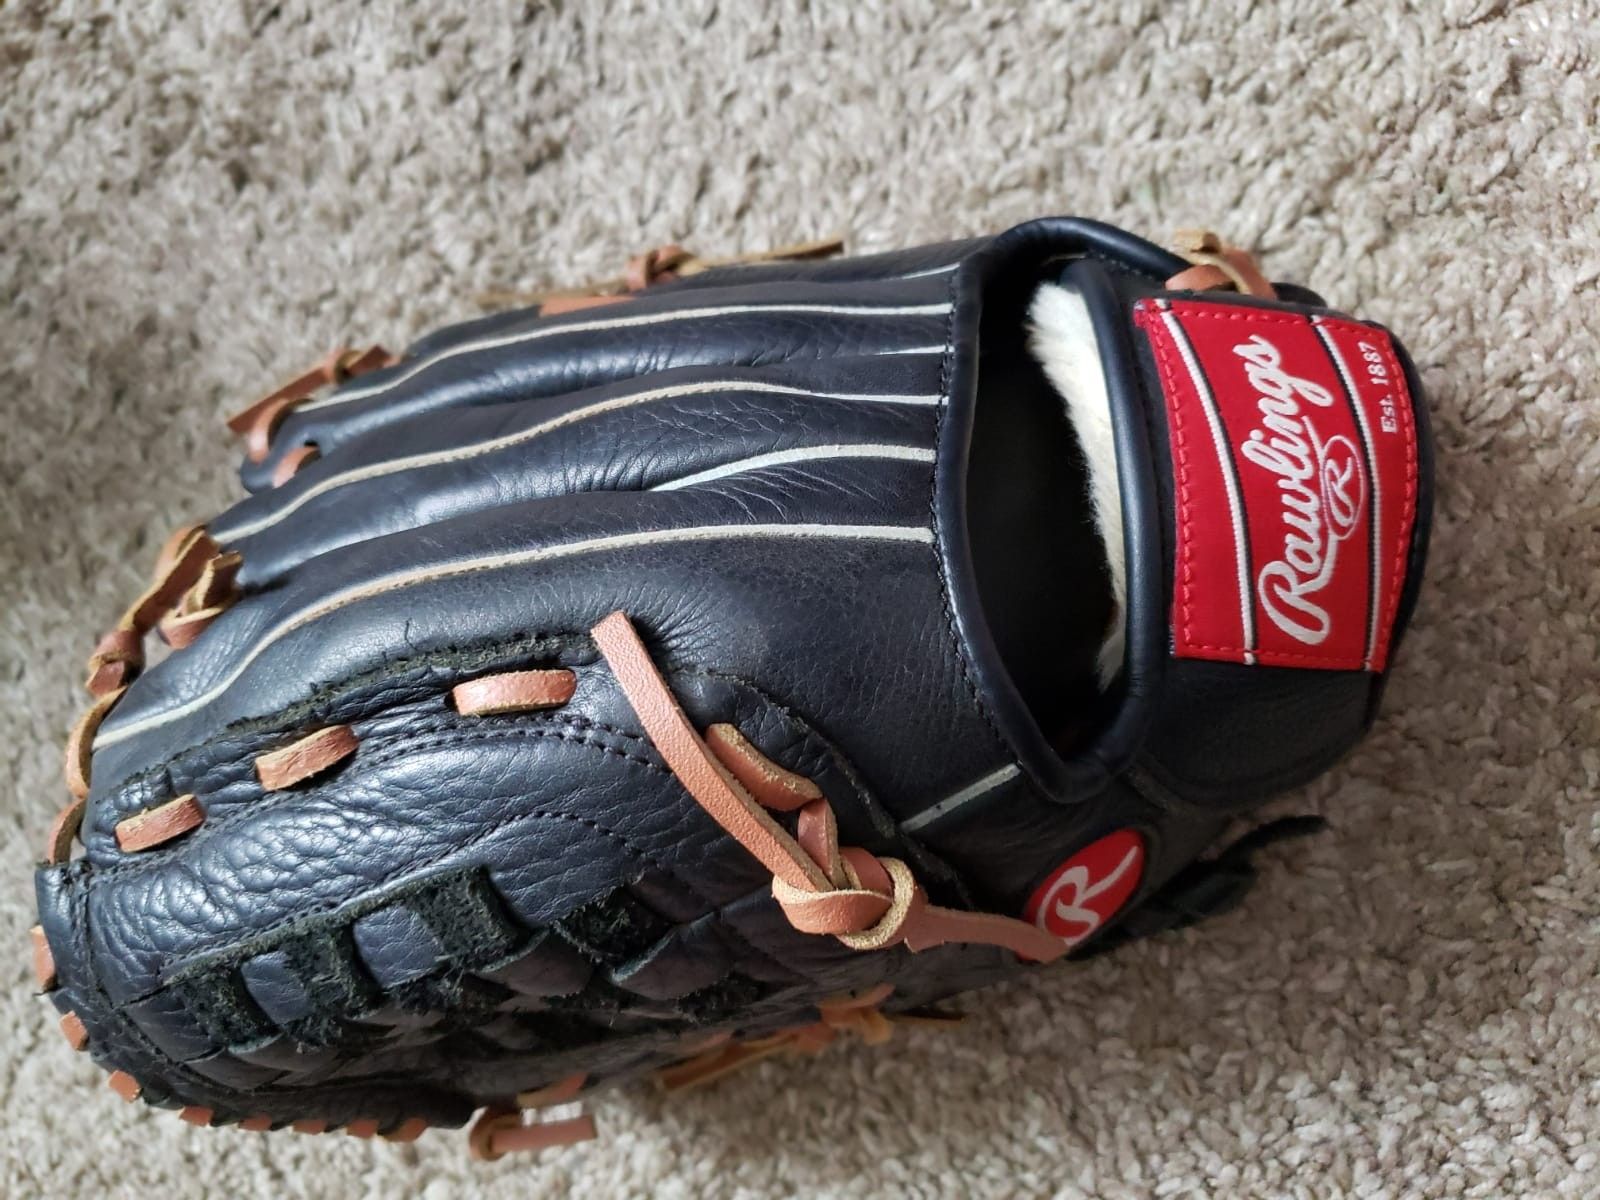 Youth baseball glove